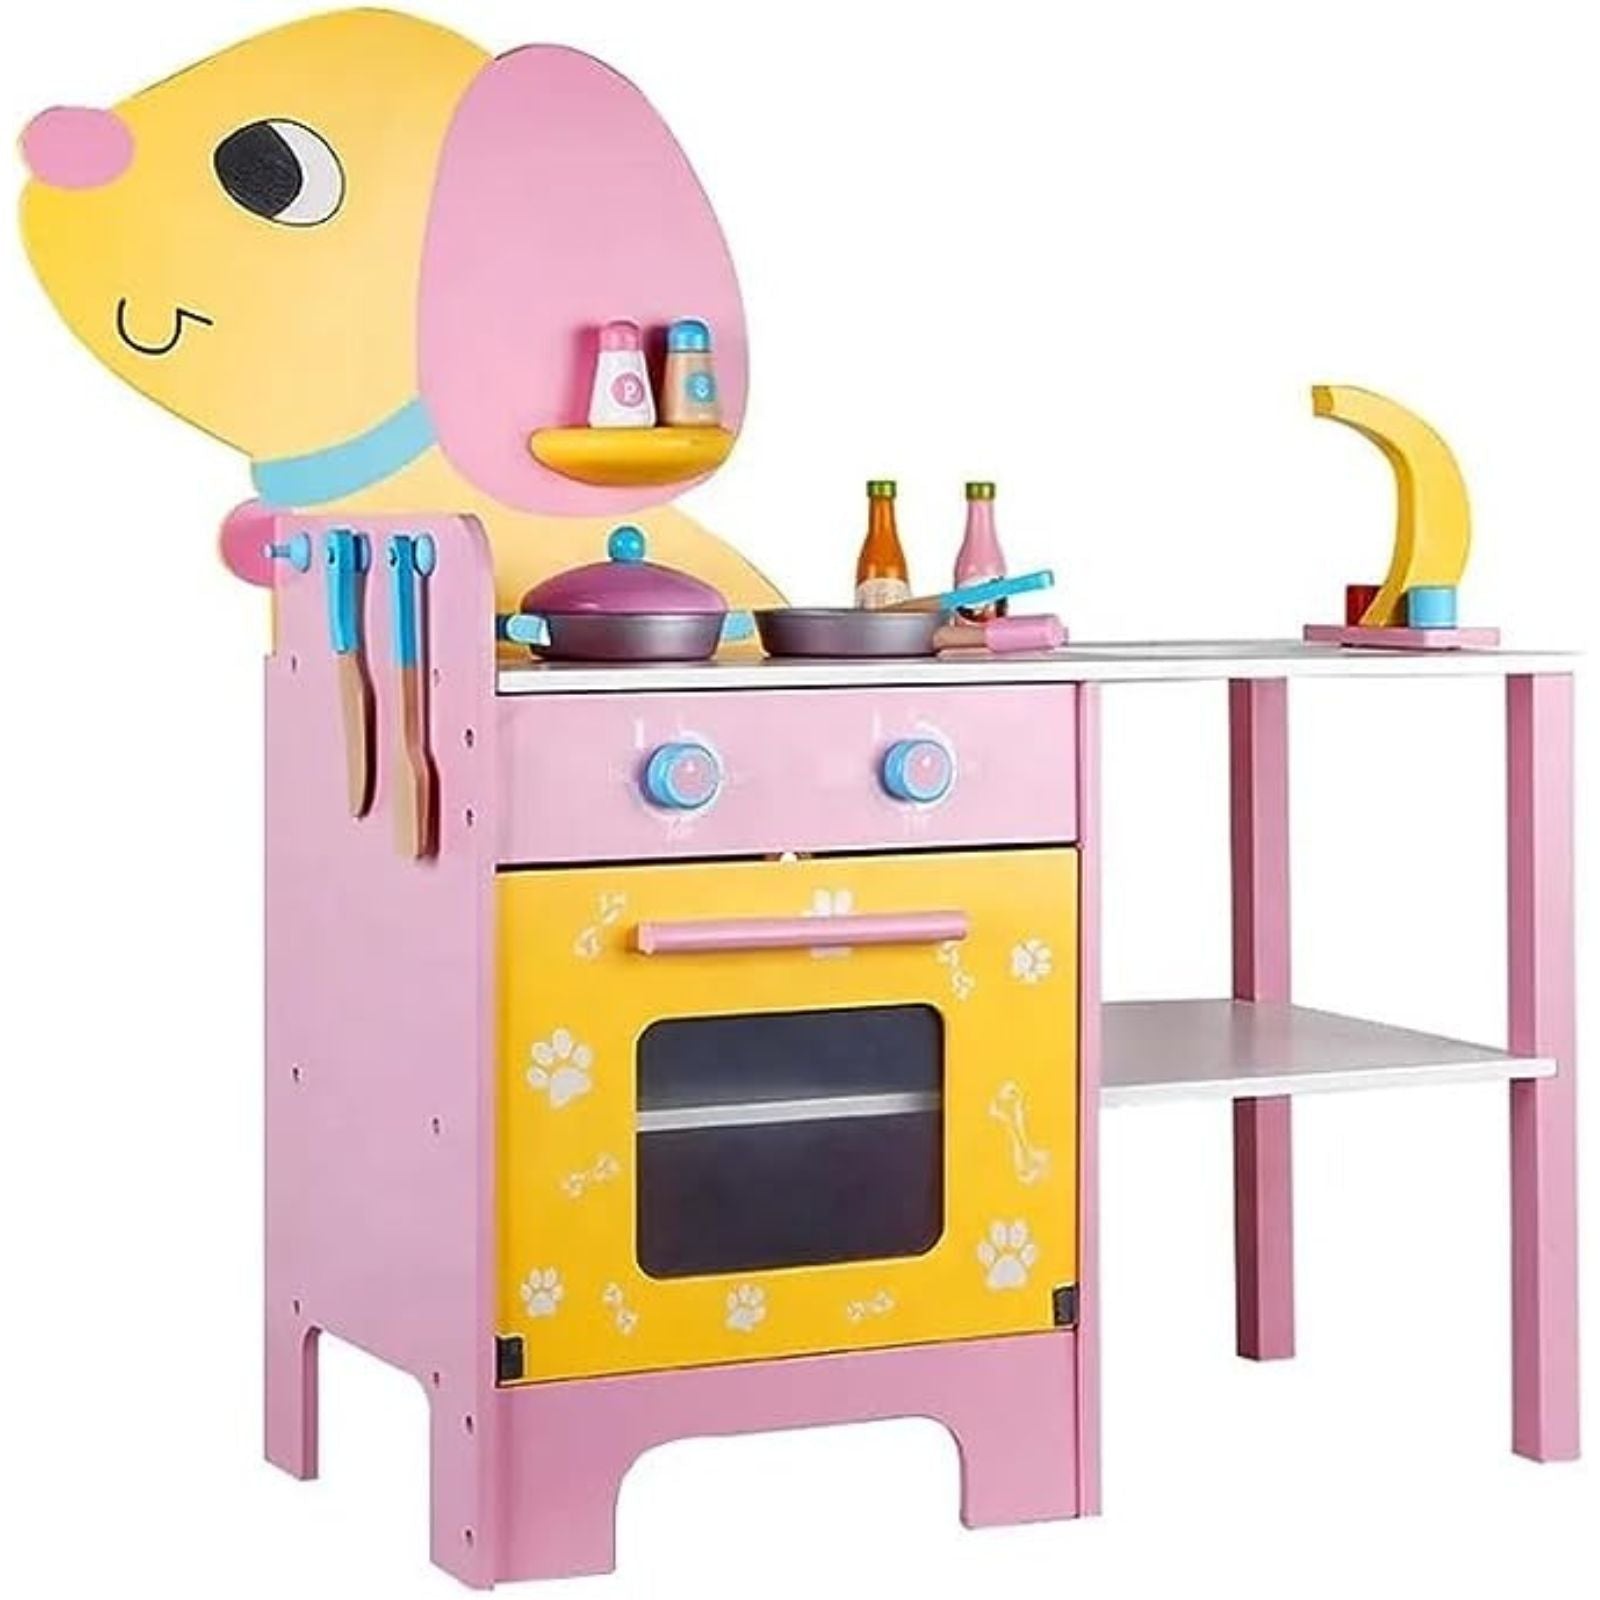 EKKIO Wooden Kitchen Playset for Kids (Puppy Shape Kitchen Set)